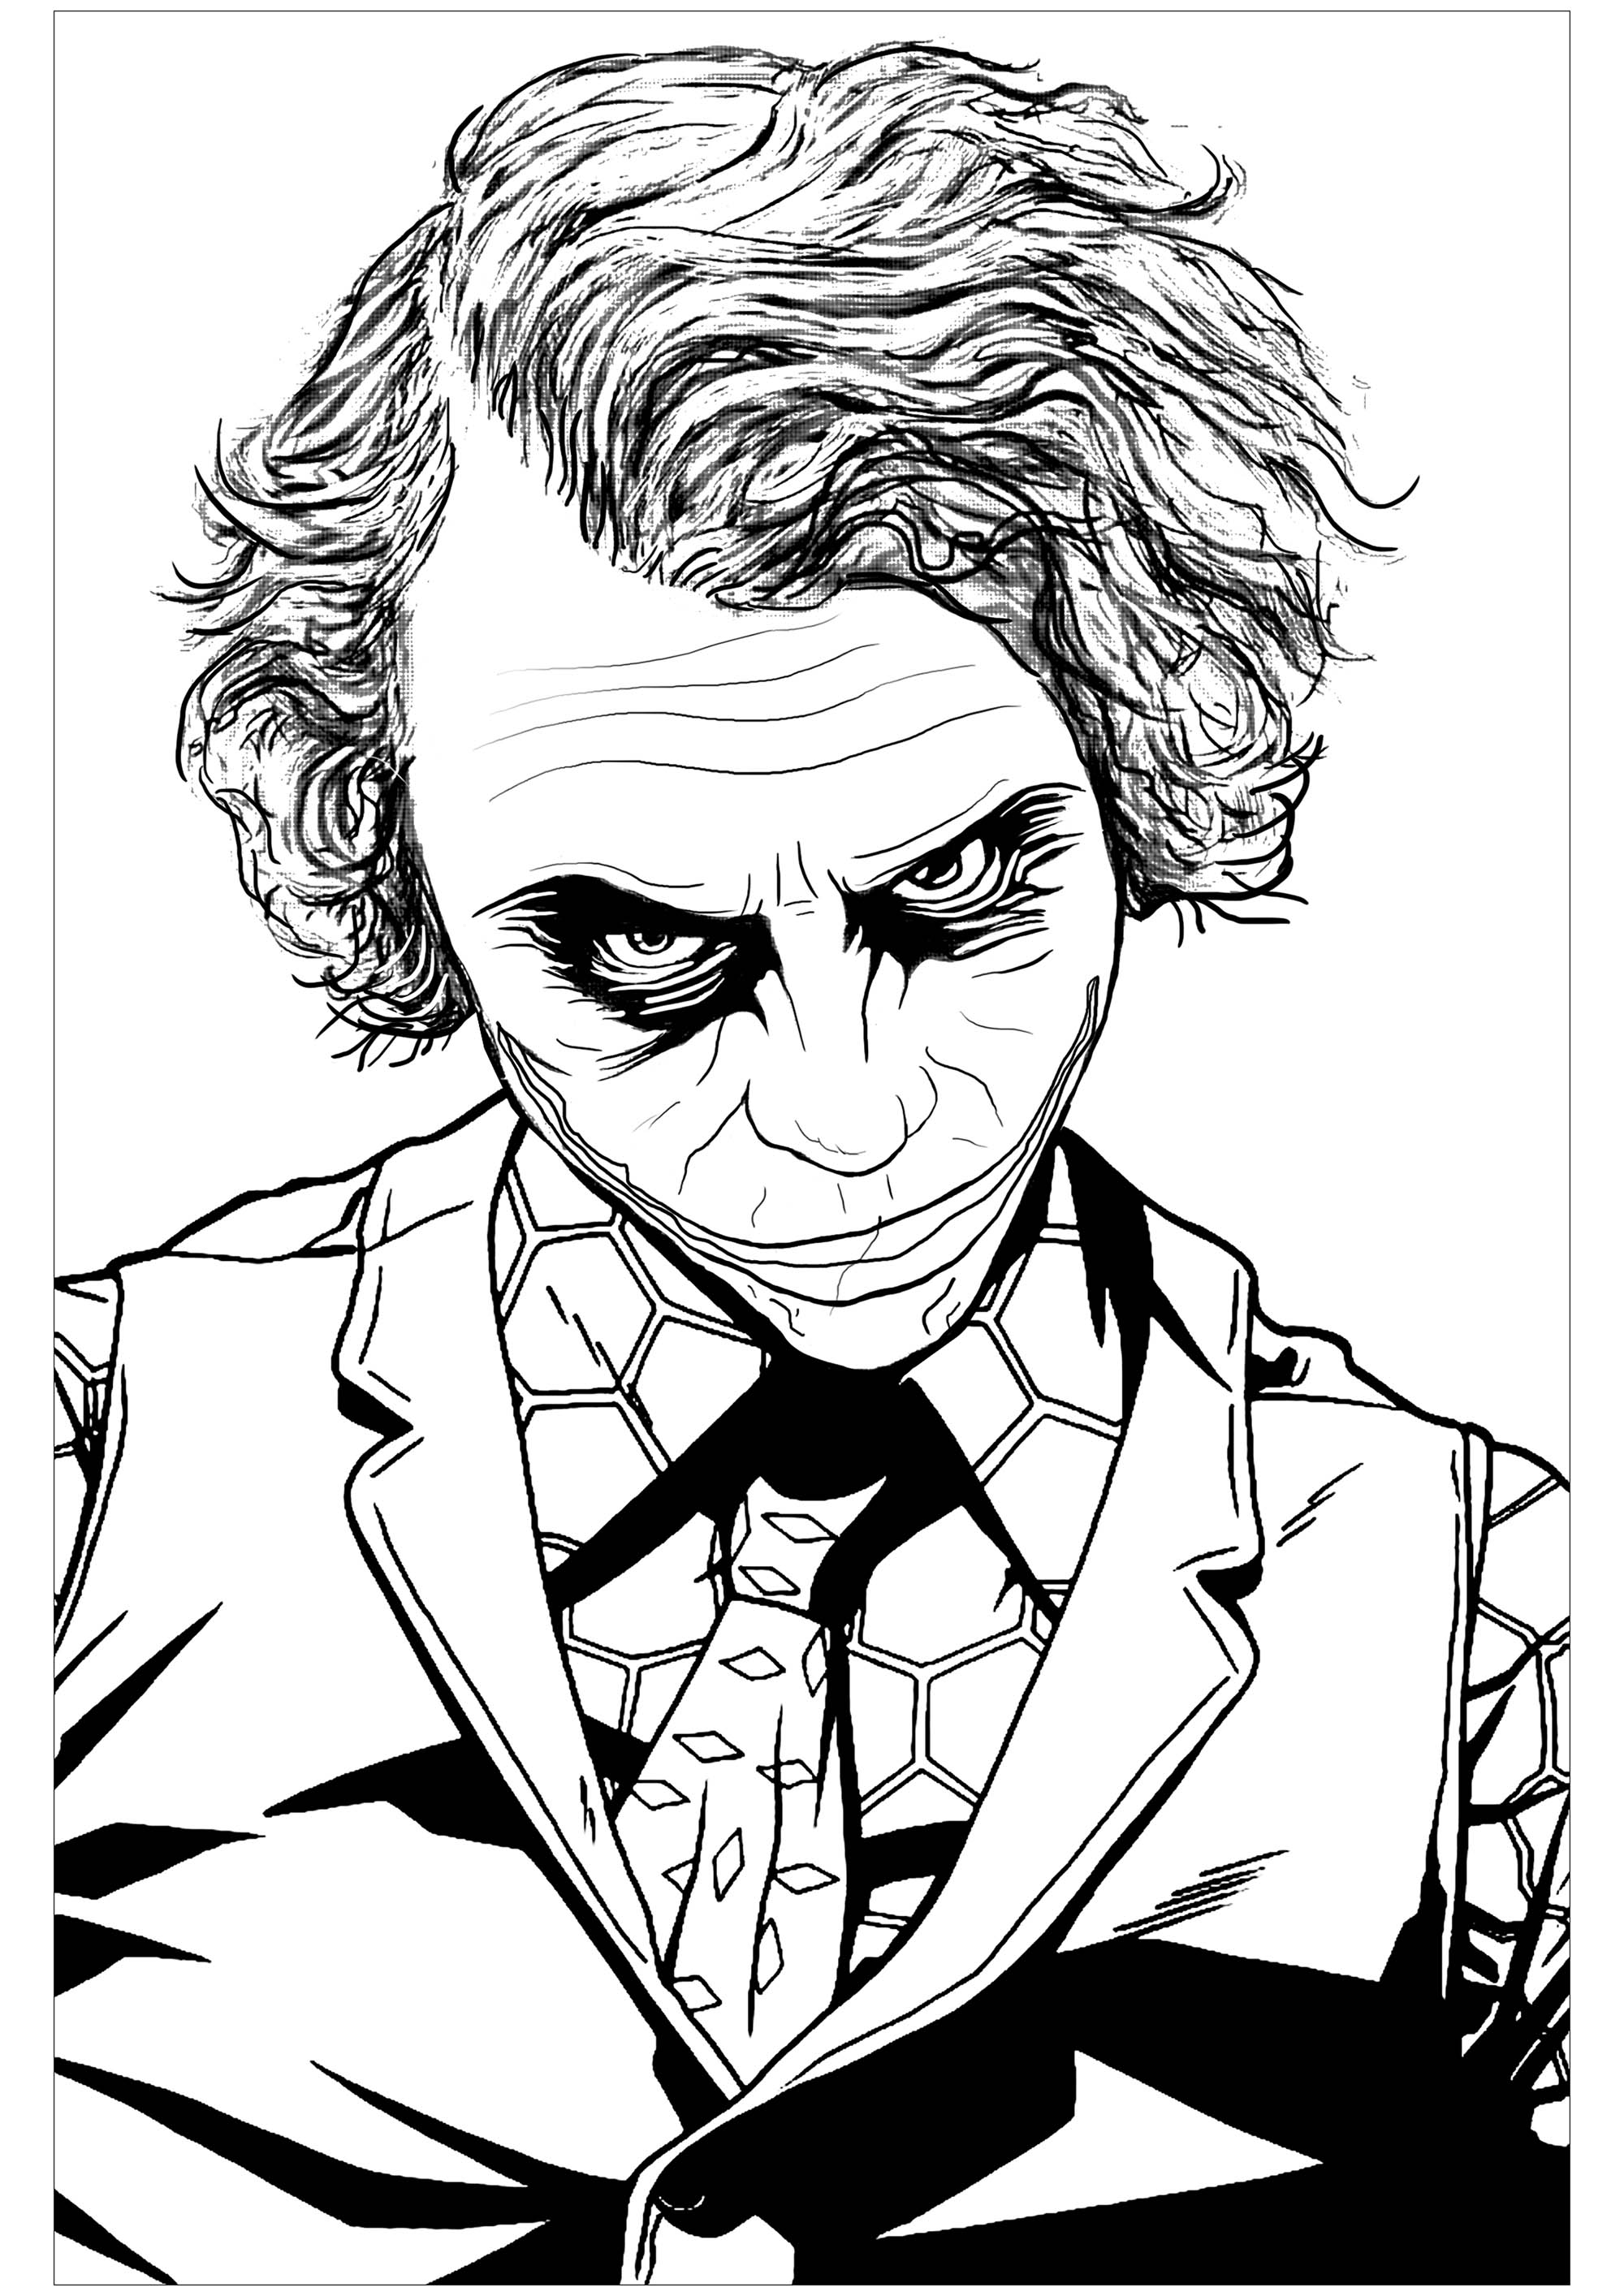 Página para colorir inspirada no infame vilão do Batman, o Joker, em 'O Cavaleiro das Trevas' (interpretado por Heath Ledger)